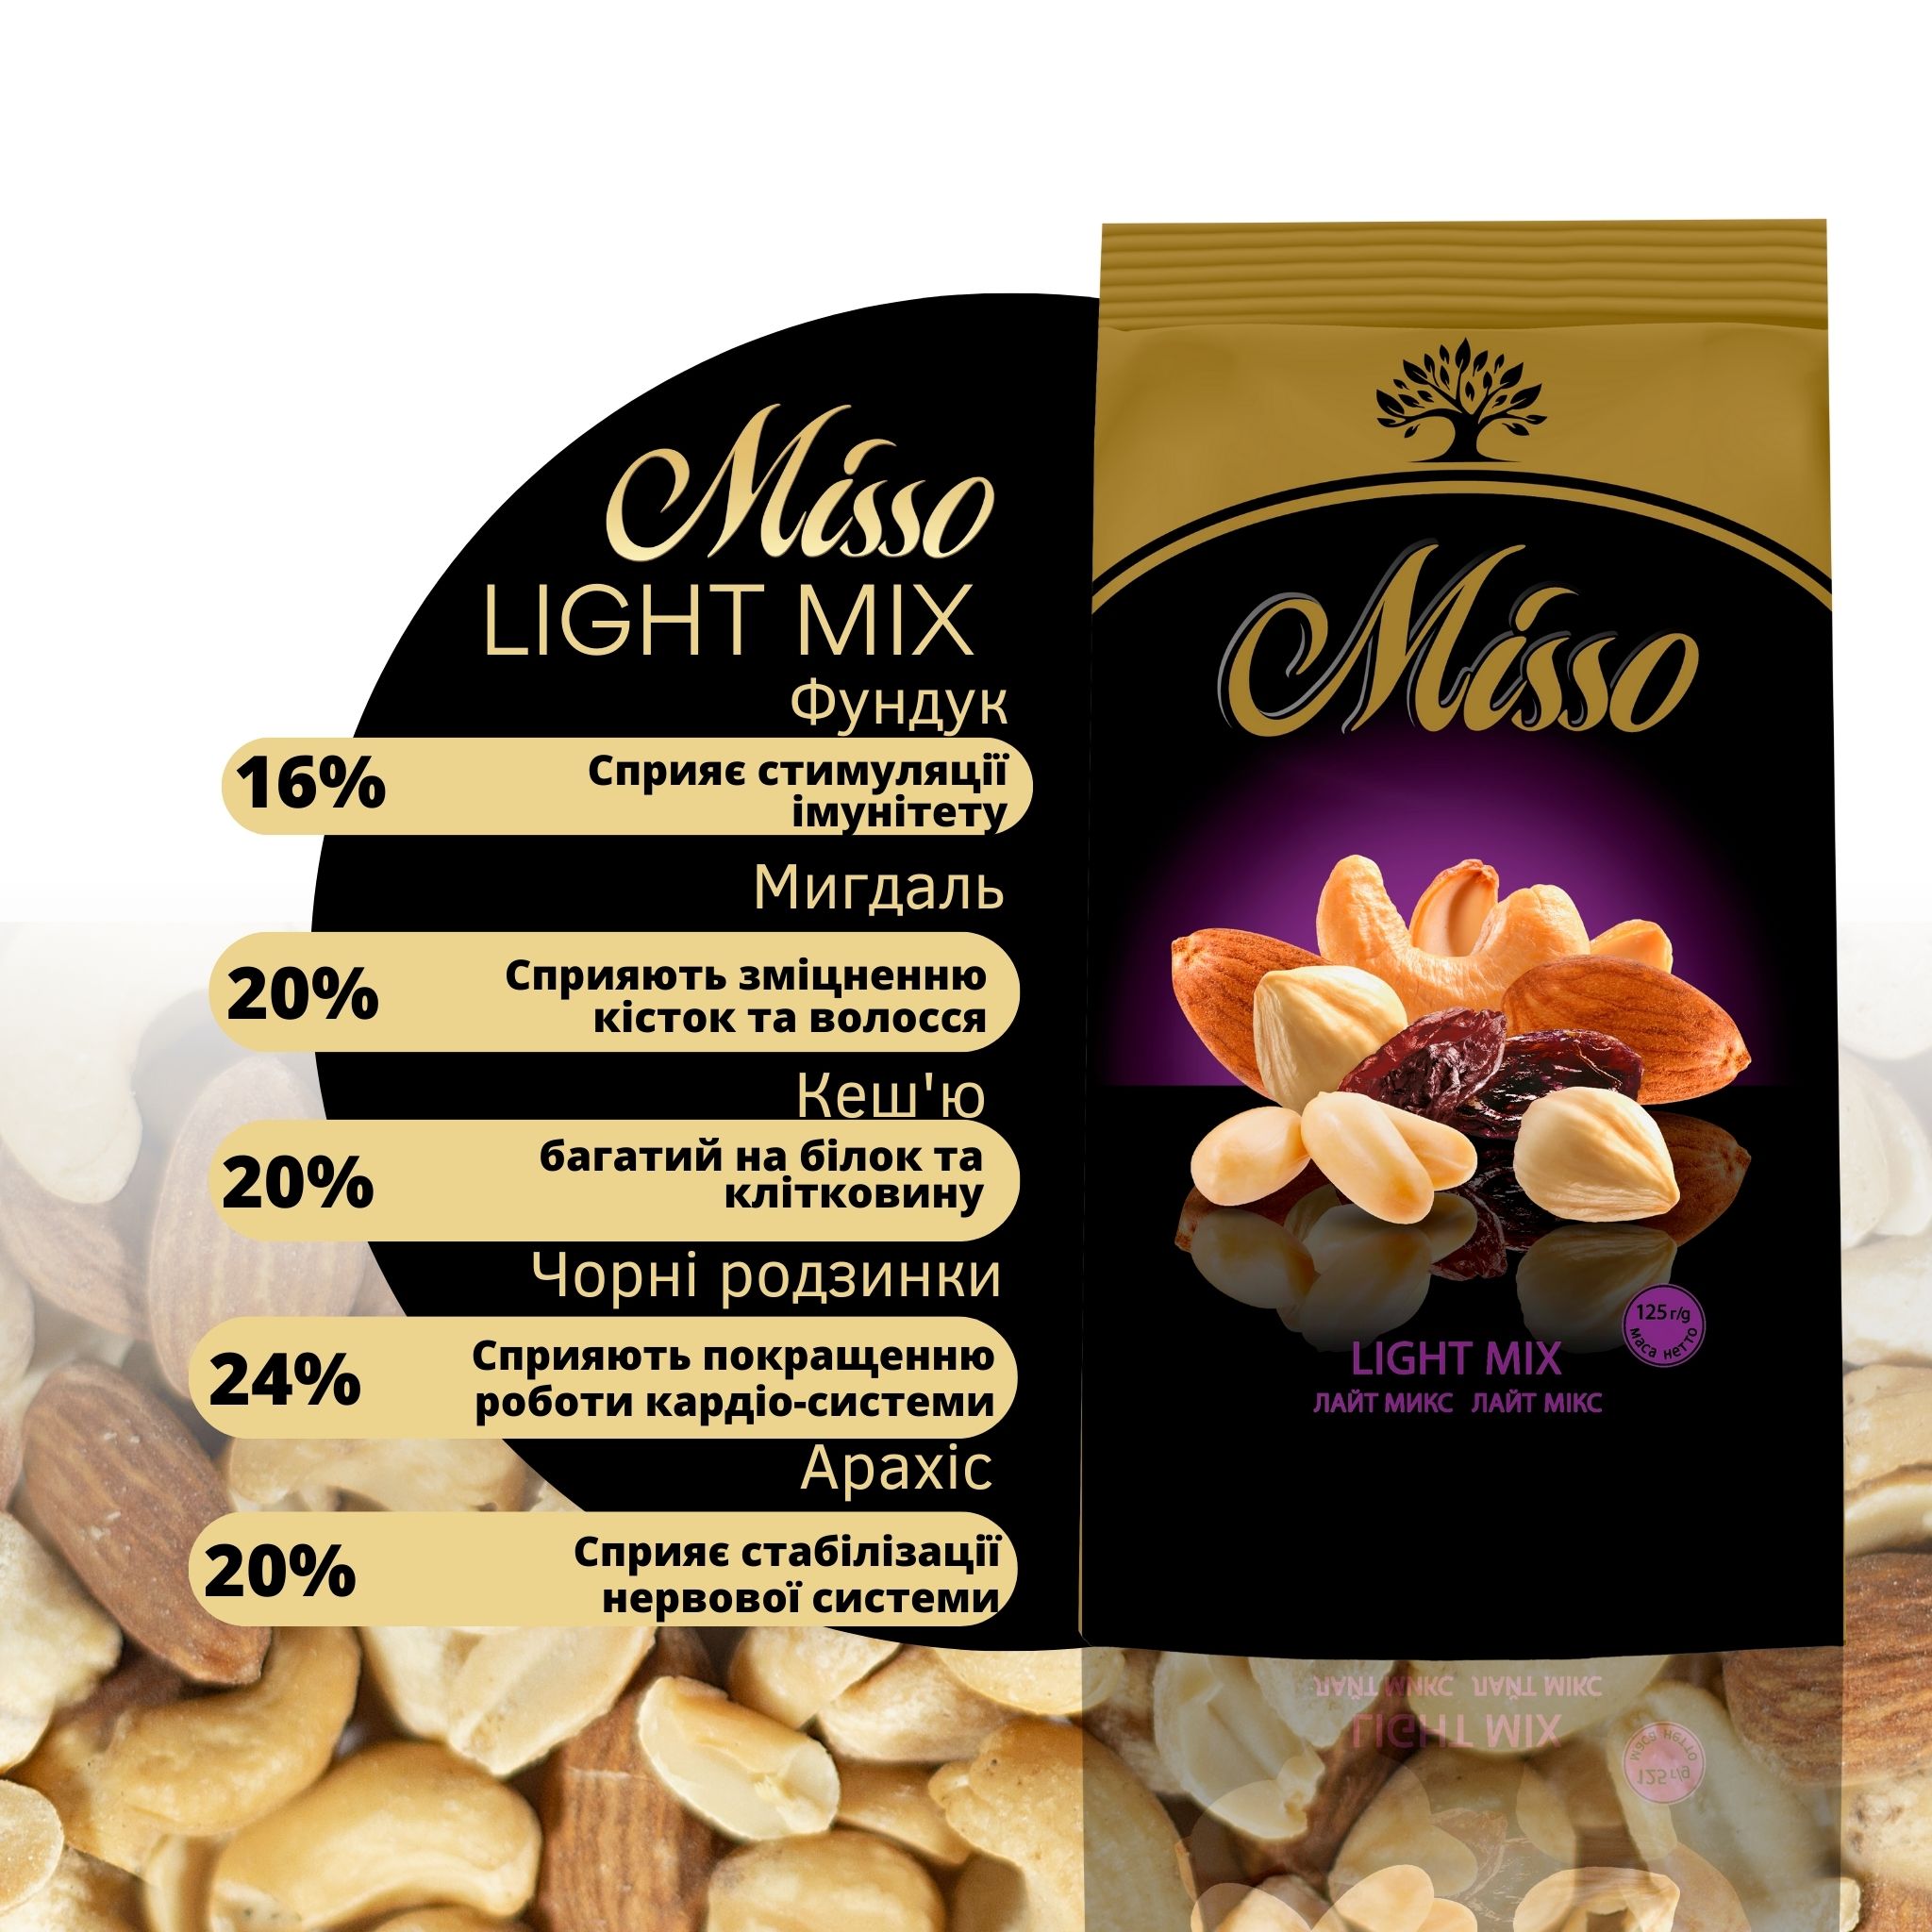 Фруктово-ореховое ассорти Misso Light Mix 125 г - фото 3